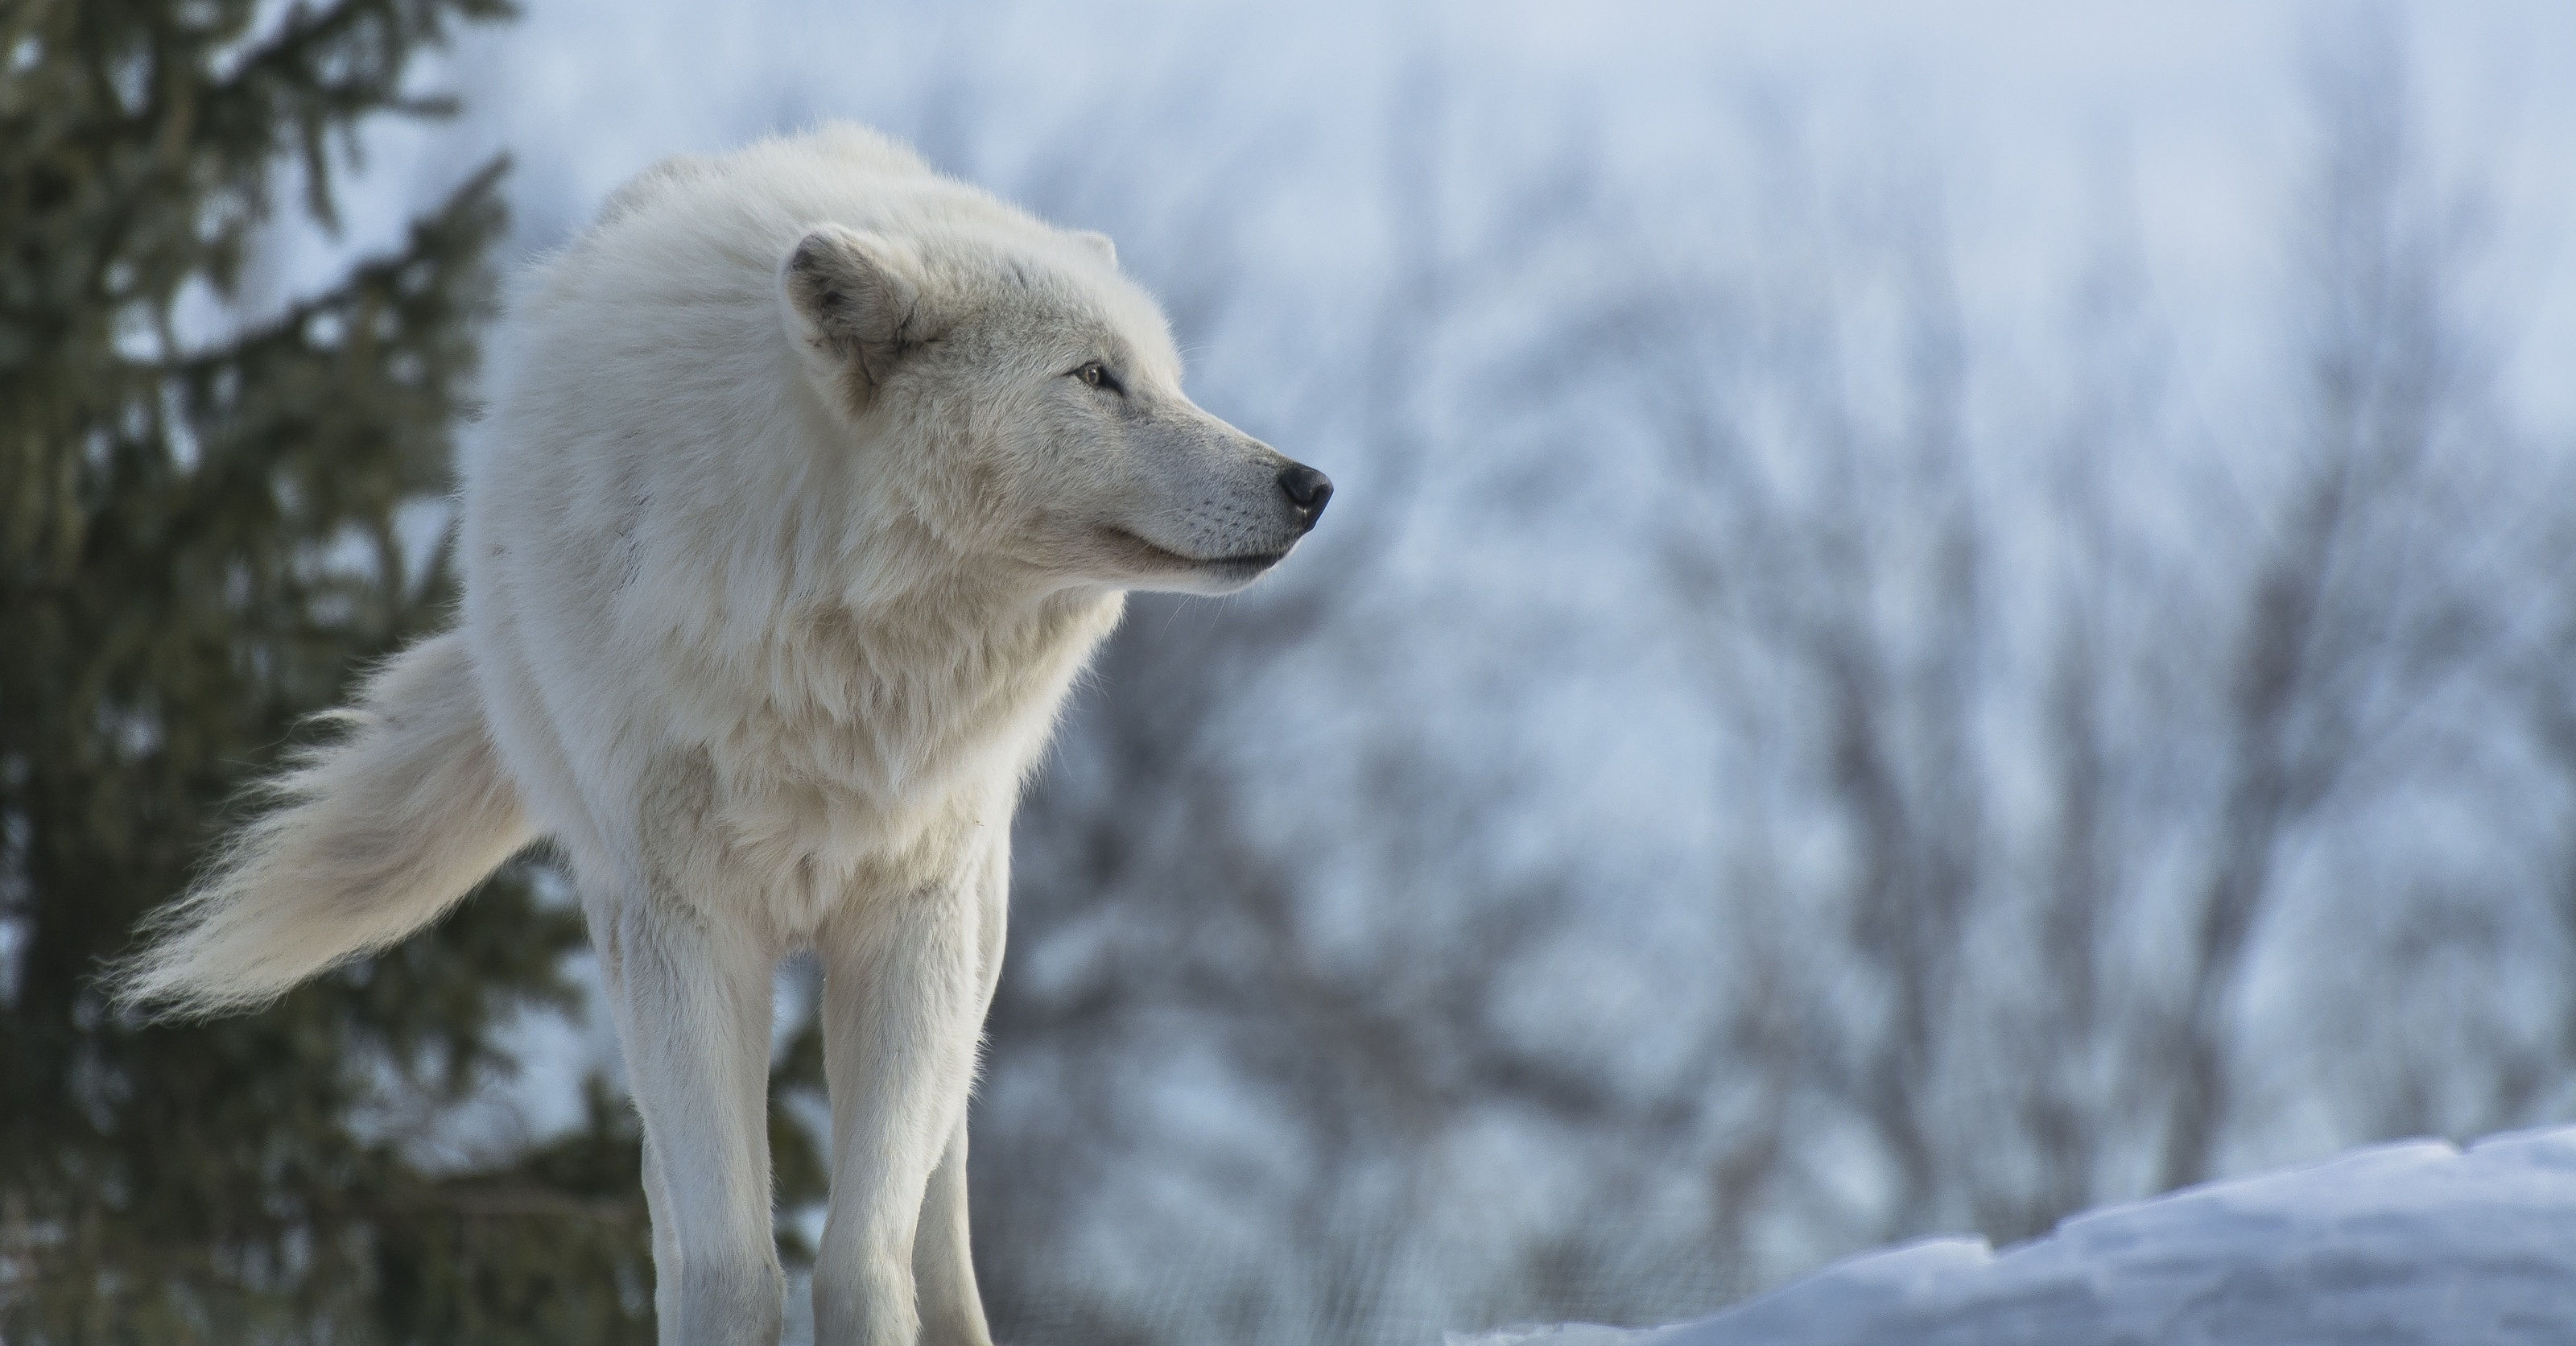 オオカミの壁紙,カニスループスツンドララム,野生動物,狼,犬,北極